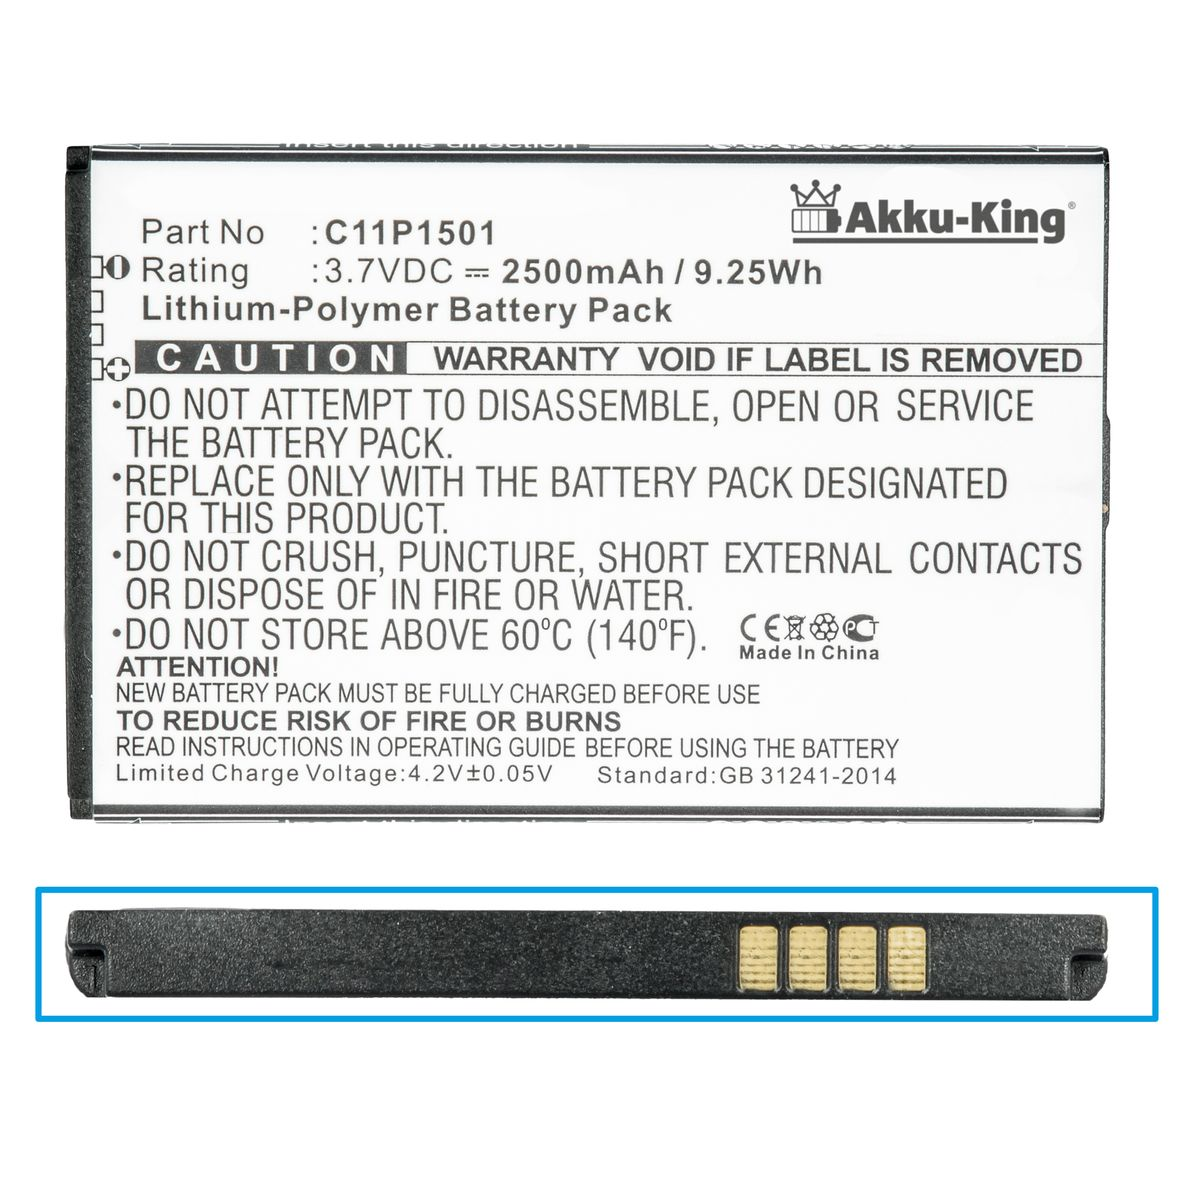 AKKU-KING Akku für Asus 3.7 2500mAh Li-Polymer Volt, Handy-Akku, C11P1501